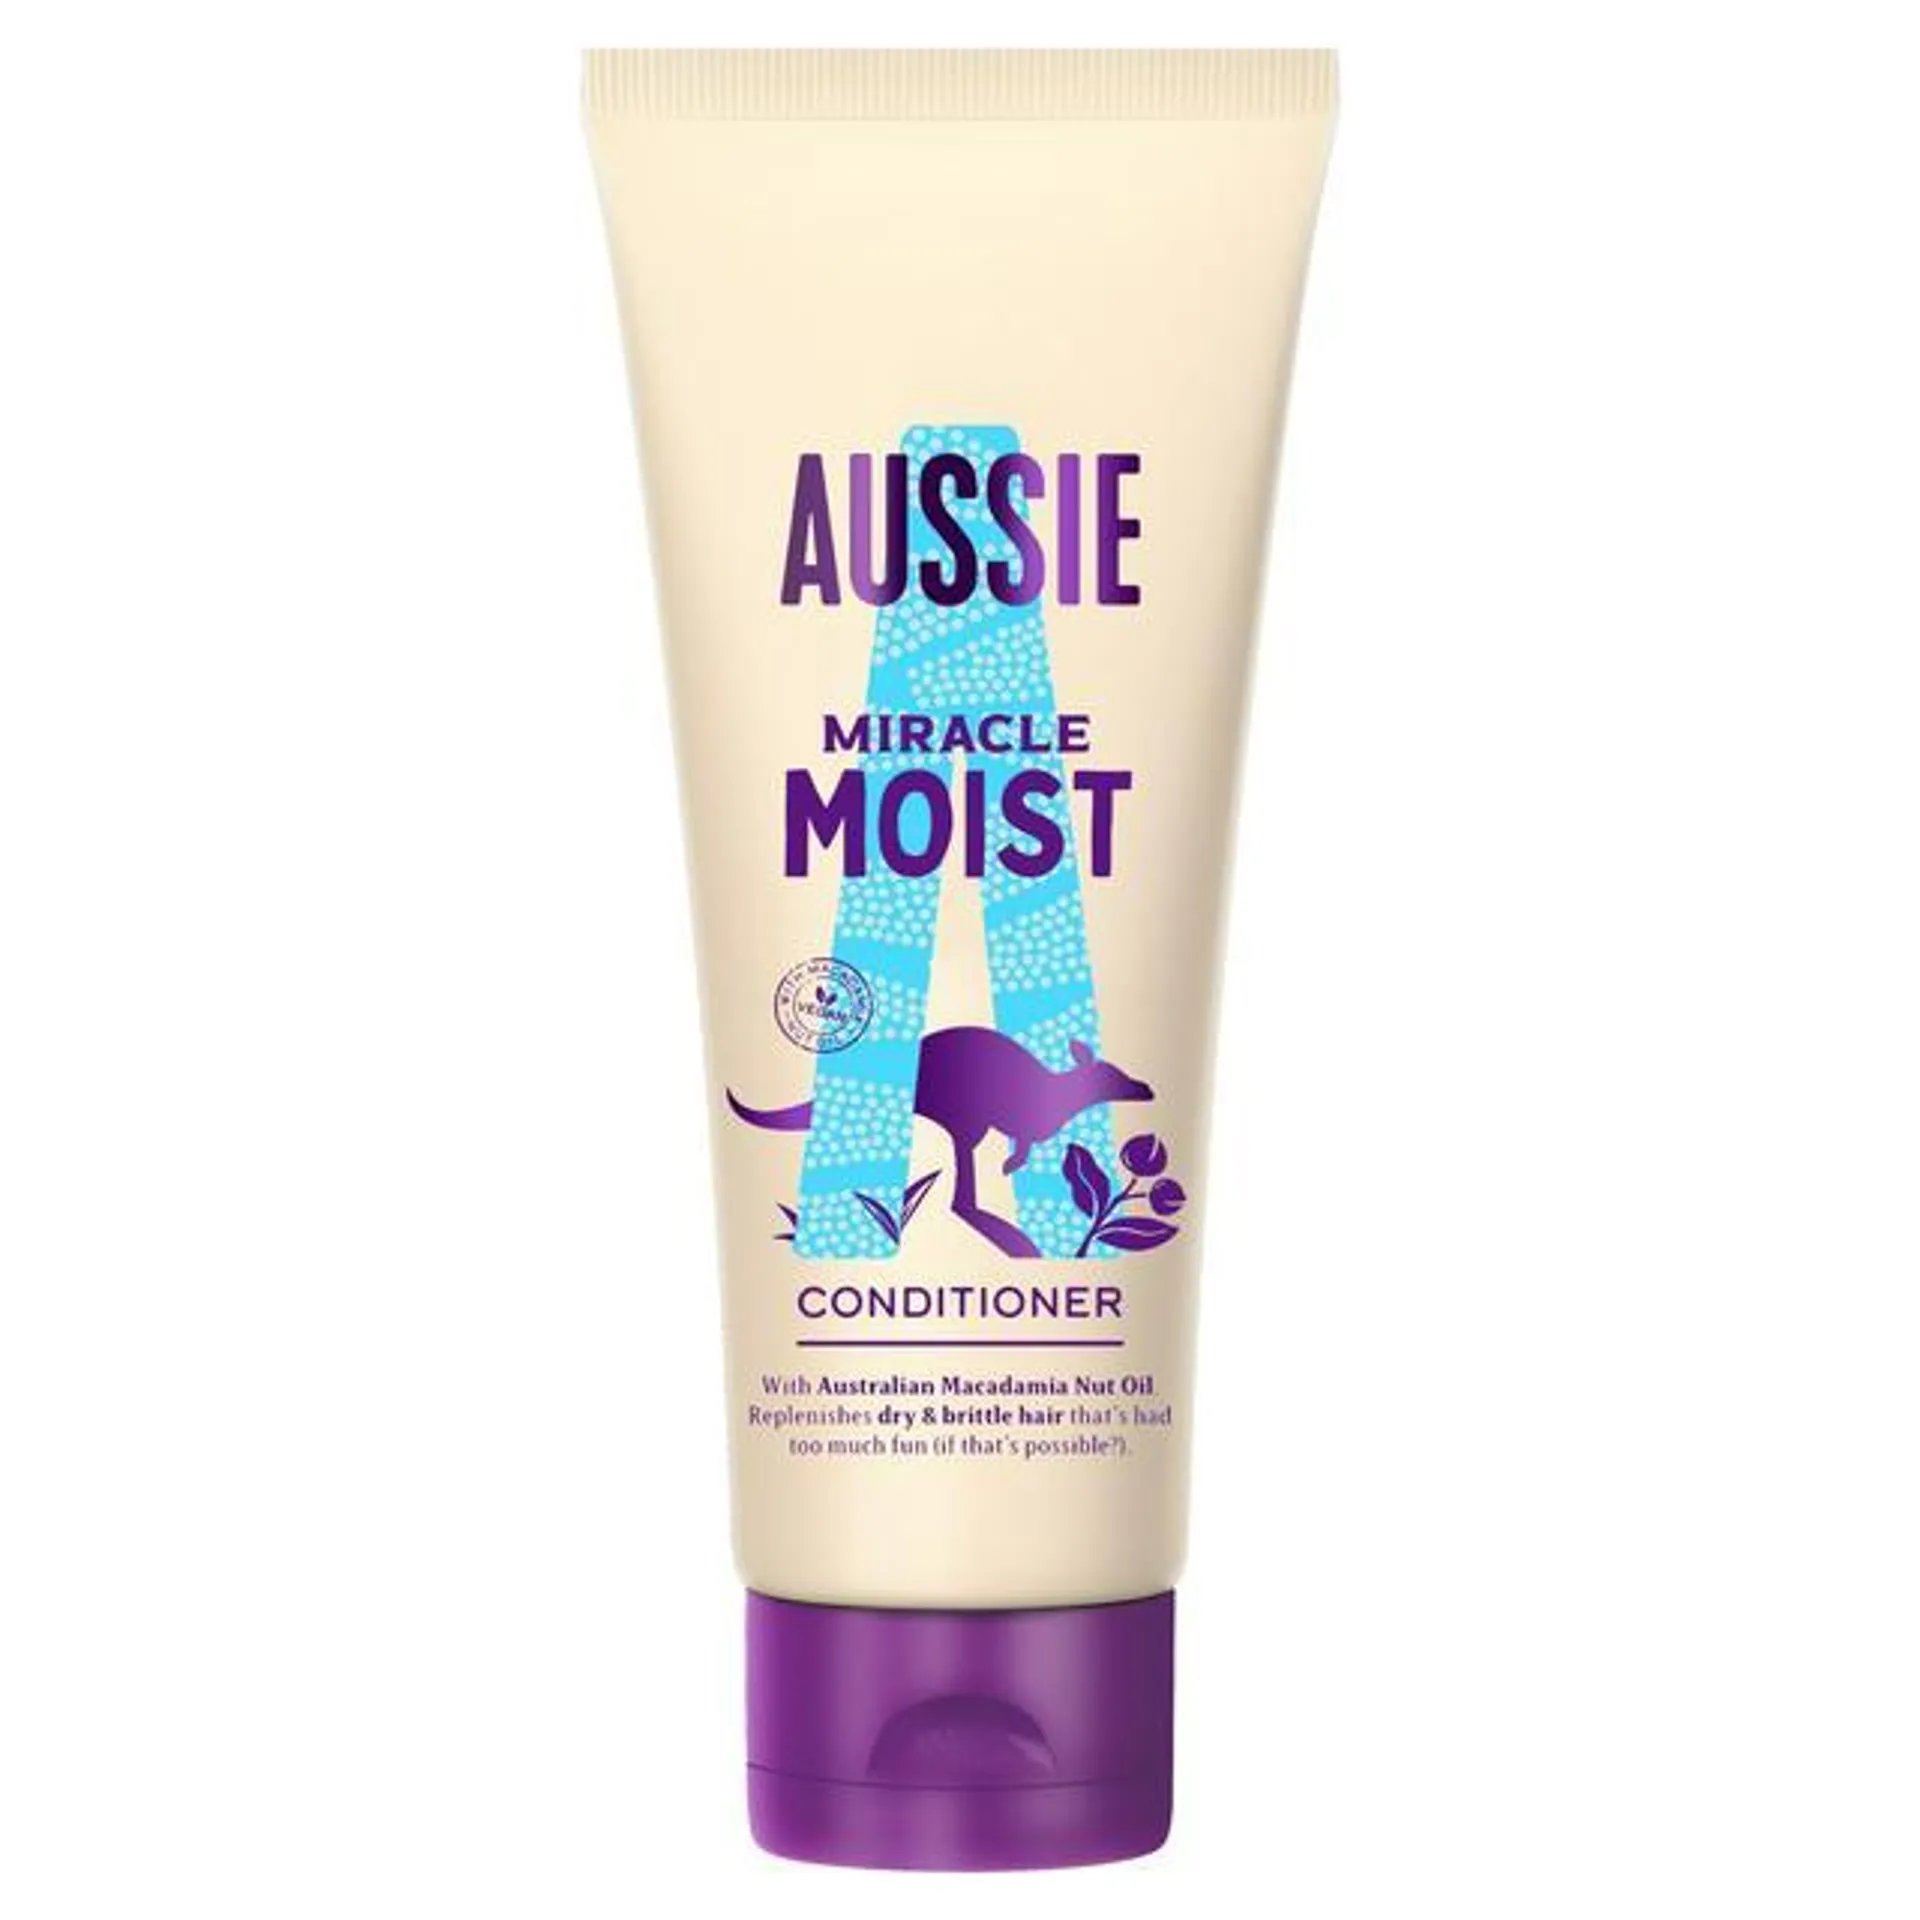 Aussie Miracle Moist Hair Conditioner, Moisturising Hair Conditioner 200ml